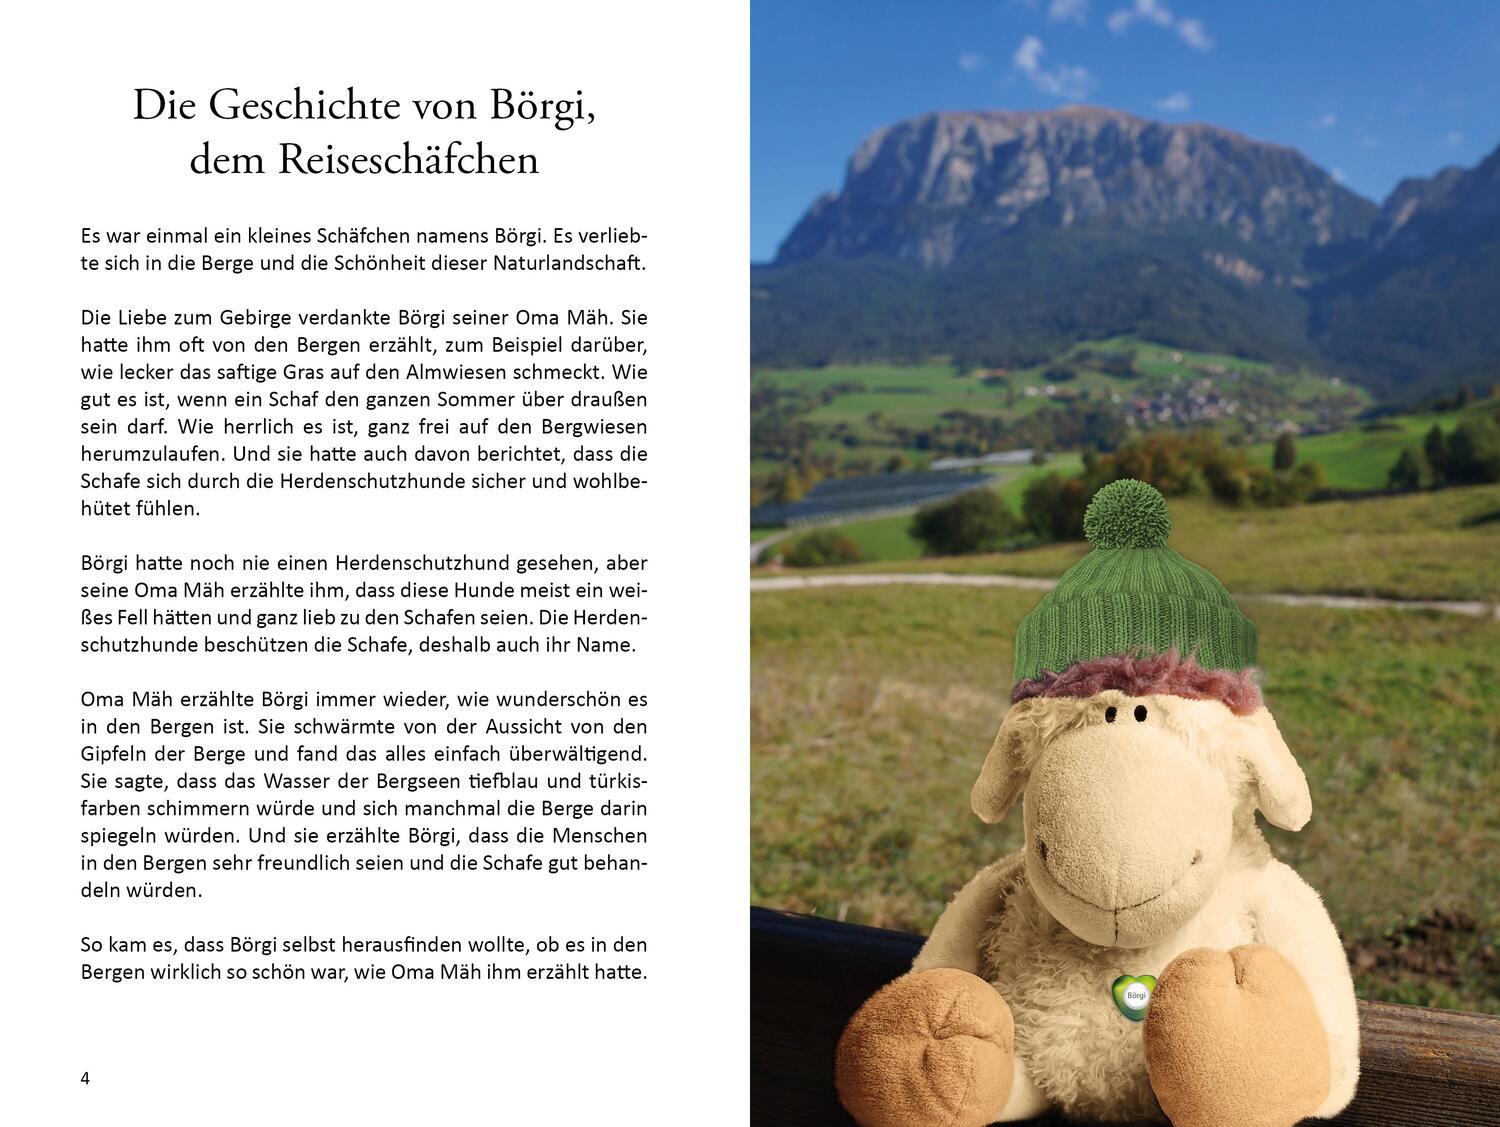 Bild: 9783960745044 | Börgi, das Reiseschaf | Christina Hehlgans | Taschenbuch | Deutsch